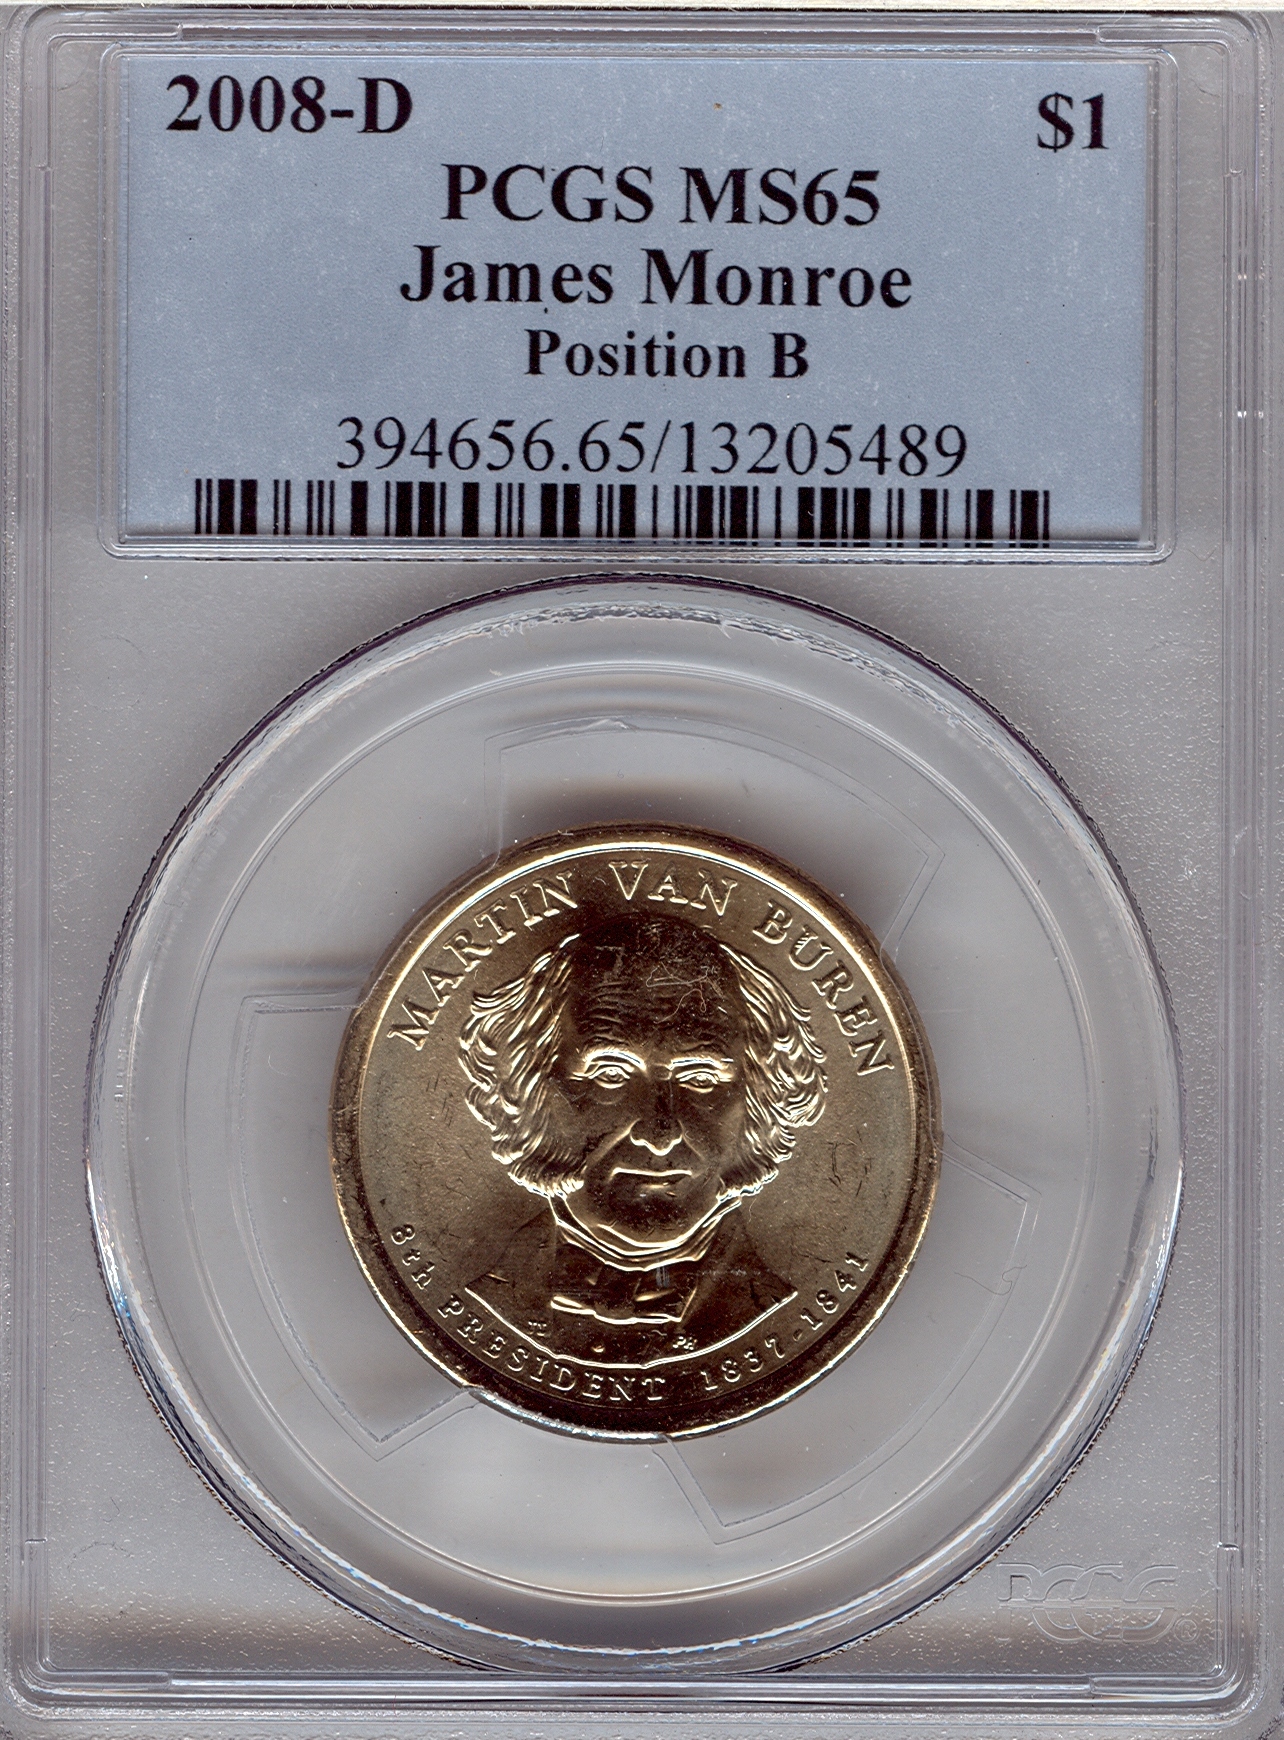 2008-D Van Buren Labeled as James Monroe 13205489 PCGS MS65 Slab Obv.jpg